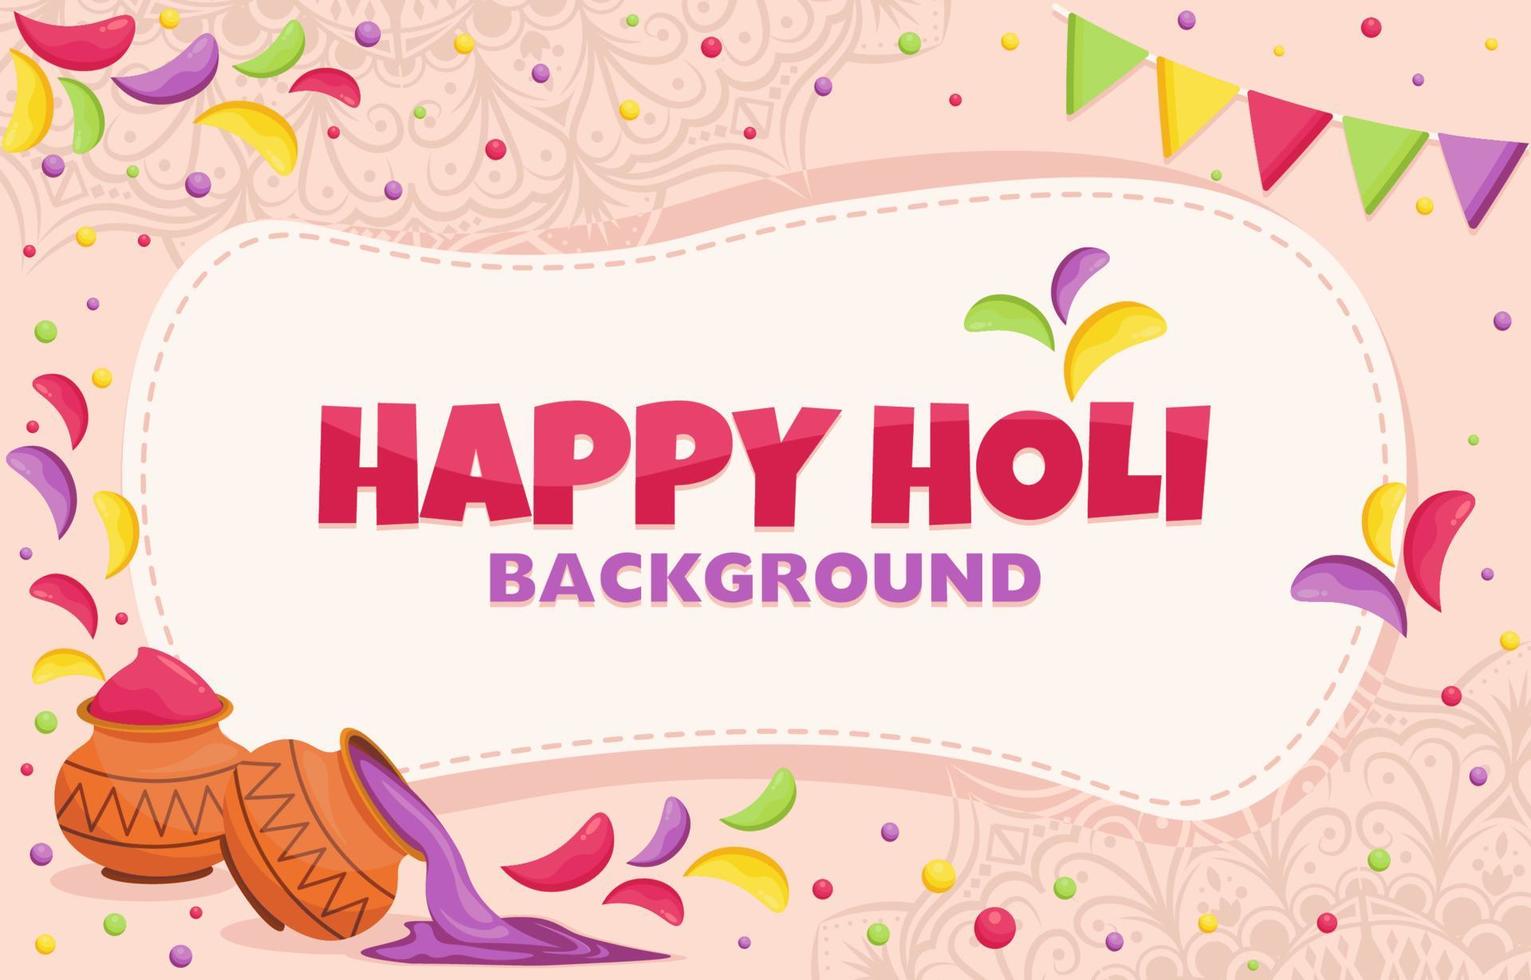 bunt von glücklichem Holi-Festival-Hintergrund kostenloser Vektor